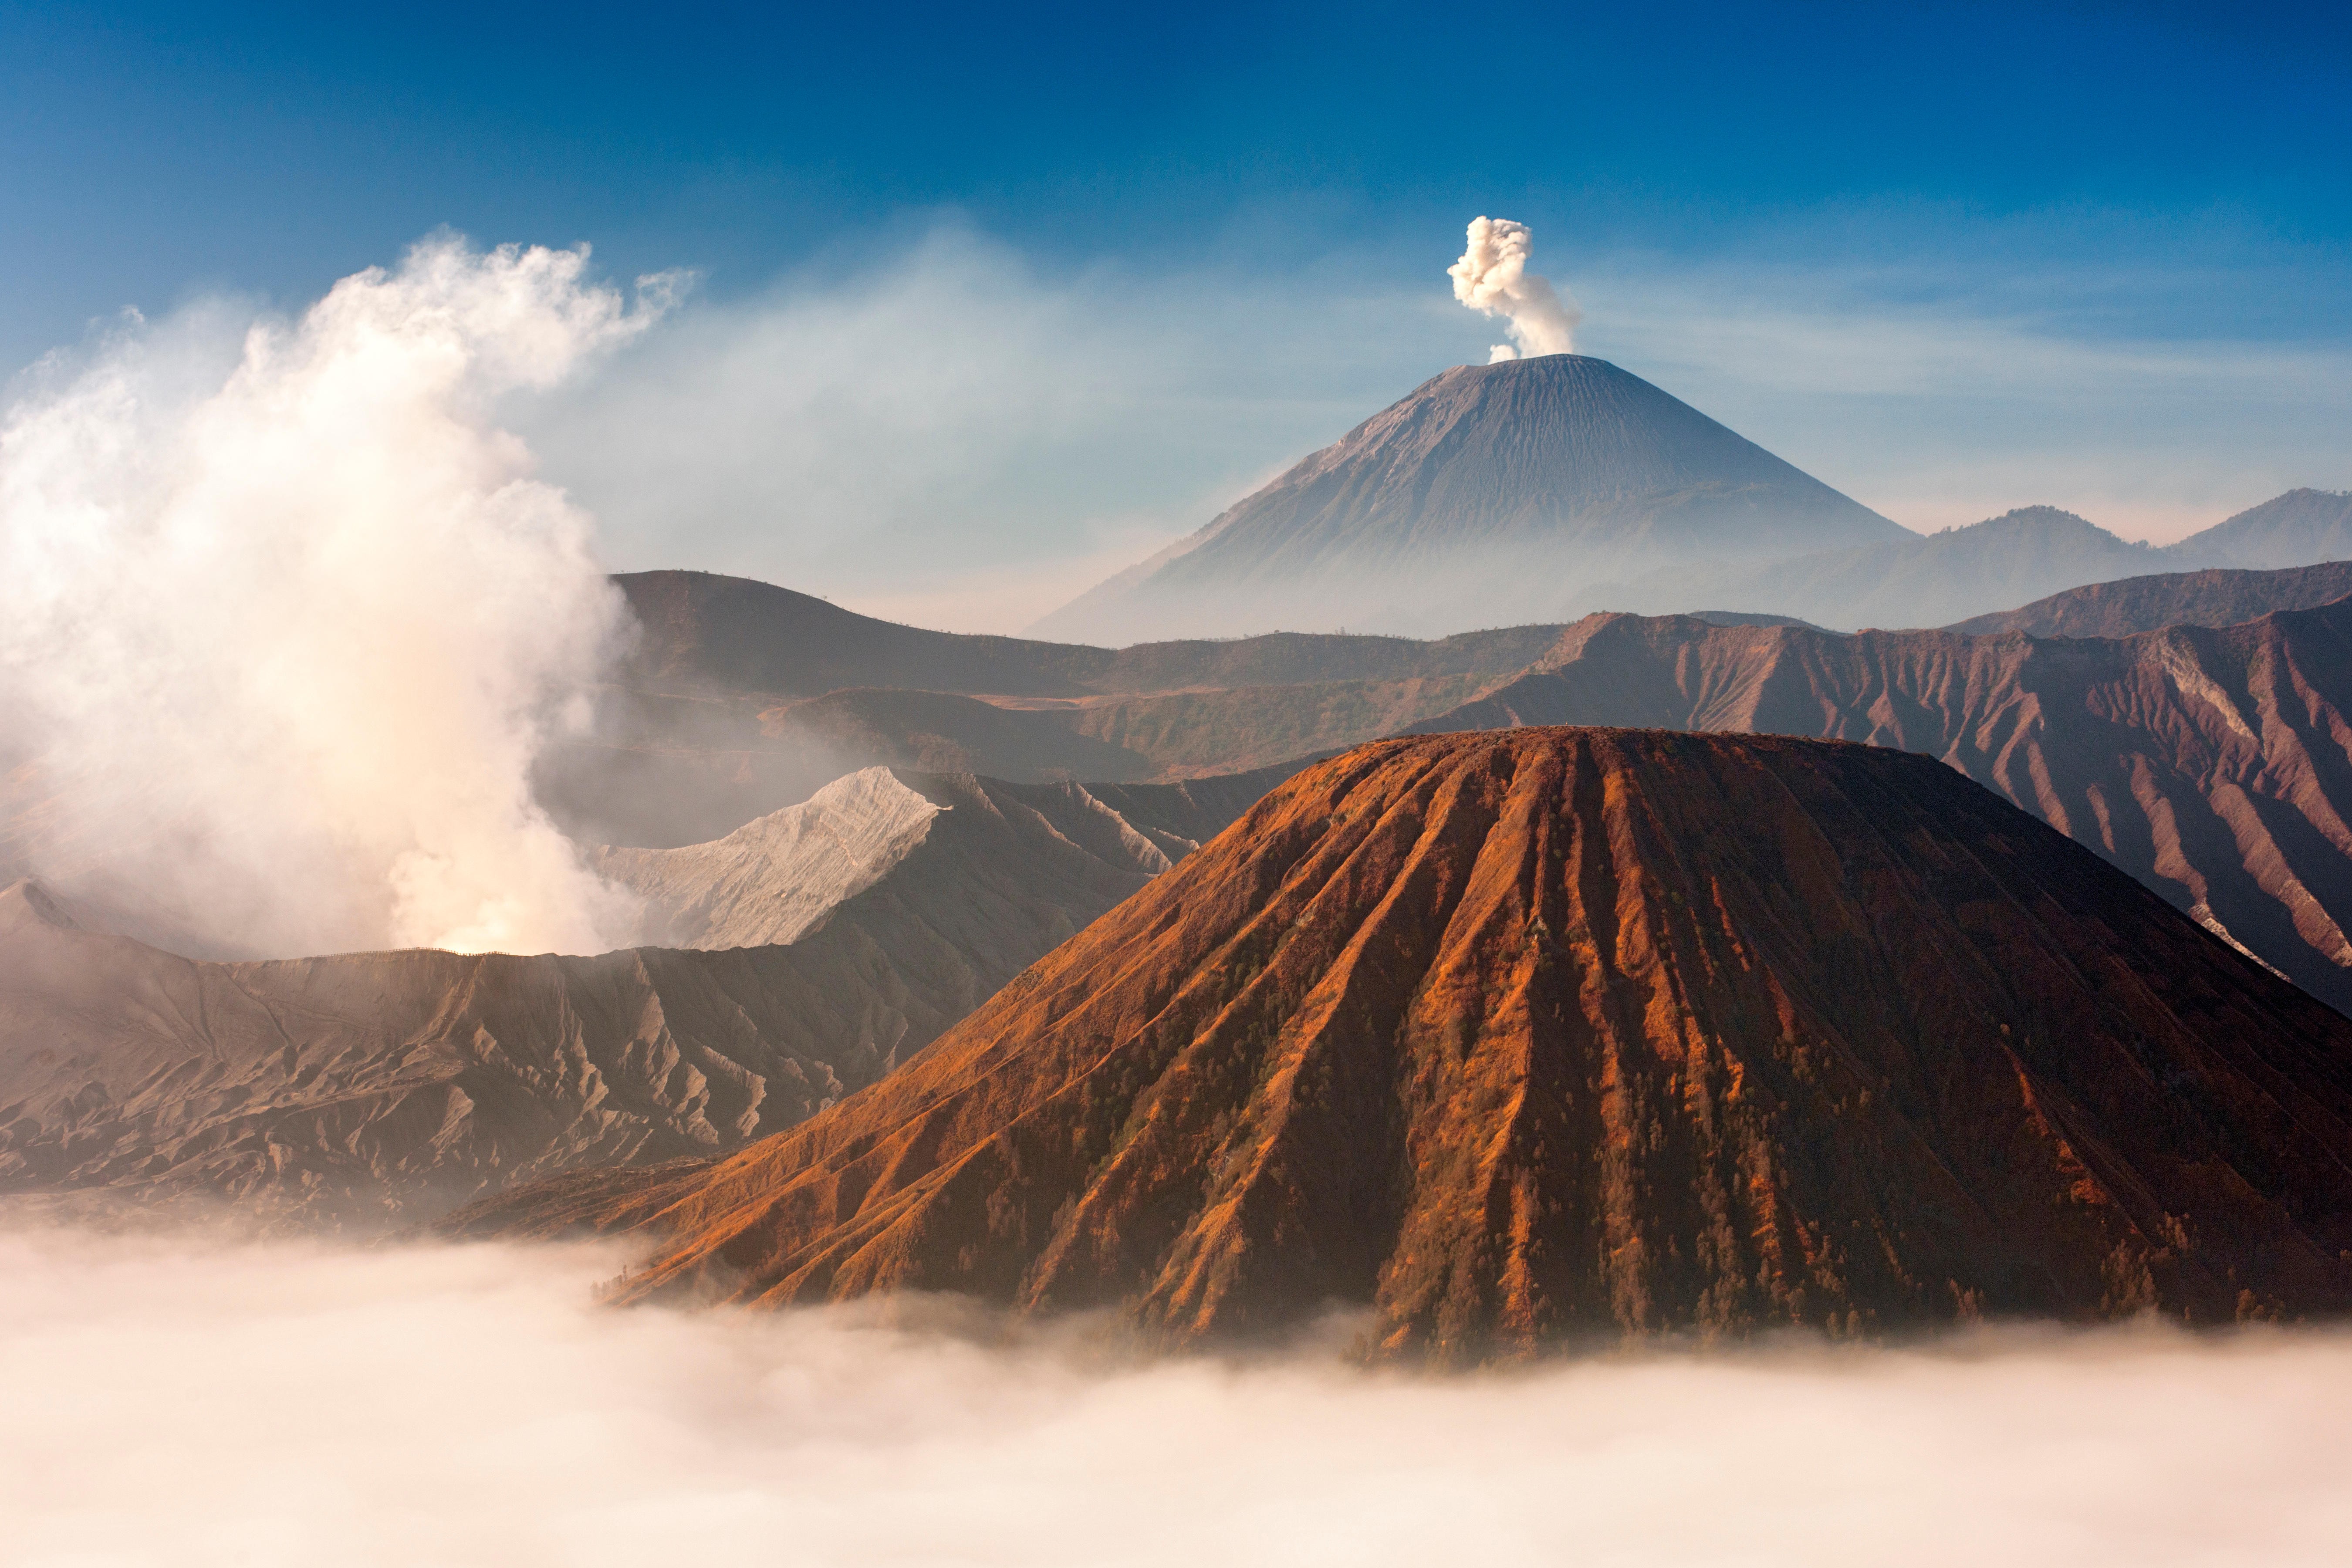 Mount Bromo (venting steam, left) and Gunung Semeru (centre, background) in Bromo Tengger Semeru National Park, Java, Indonesia. Photo: Alamy